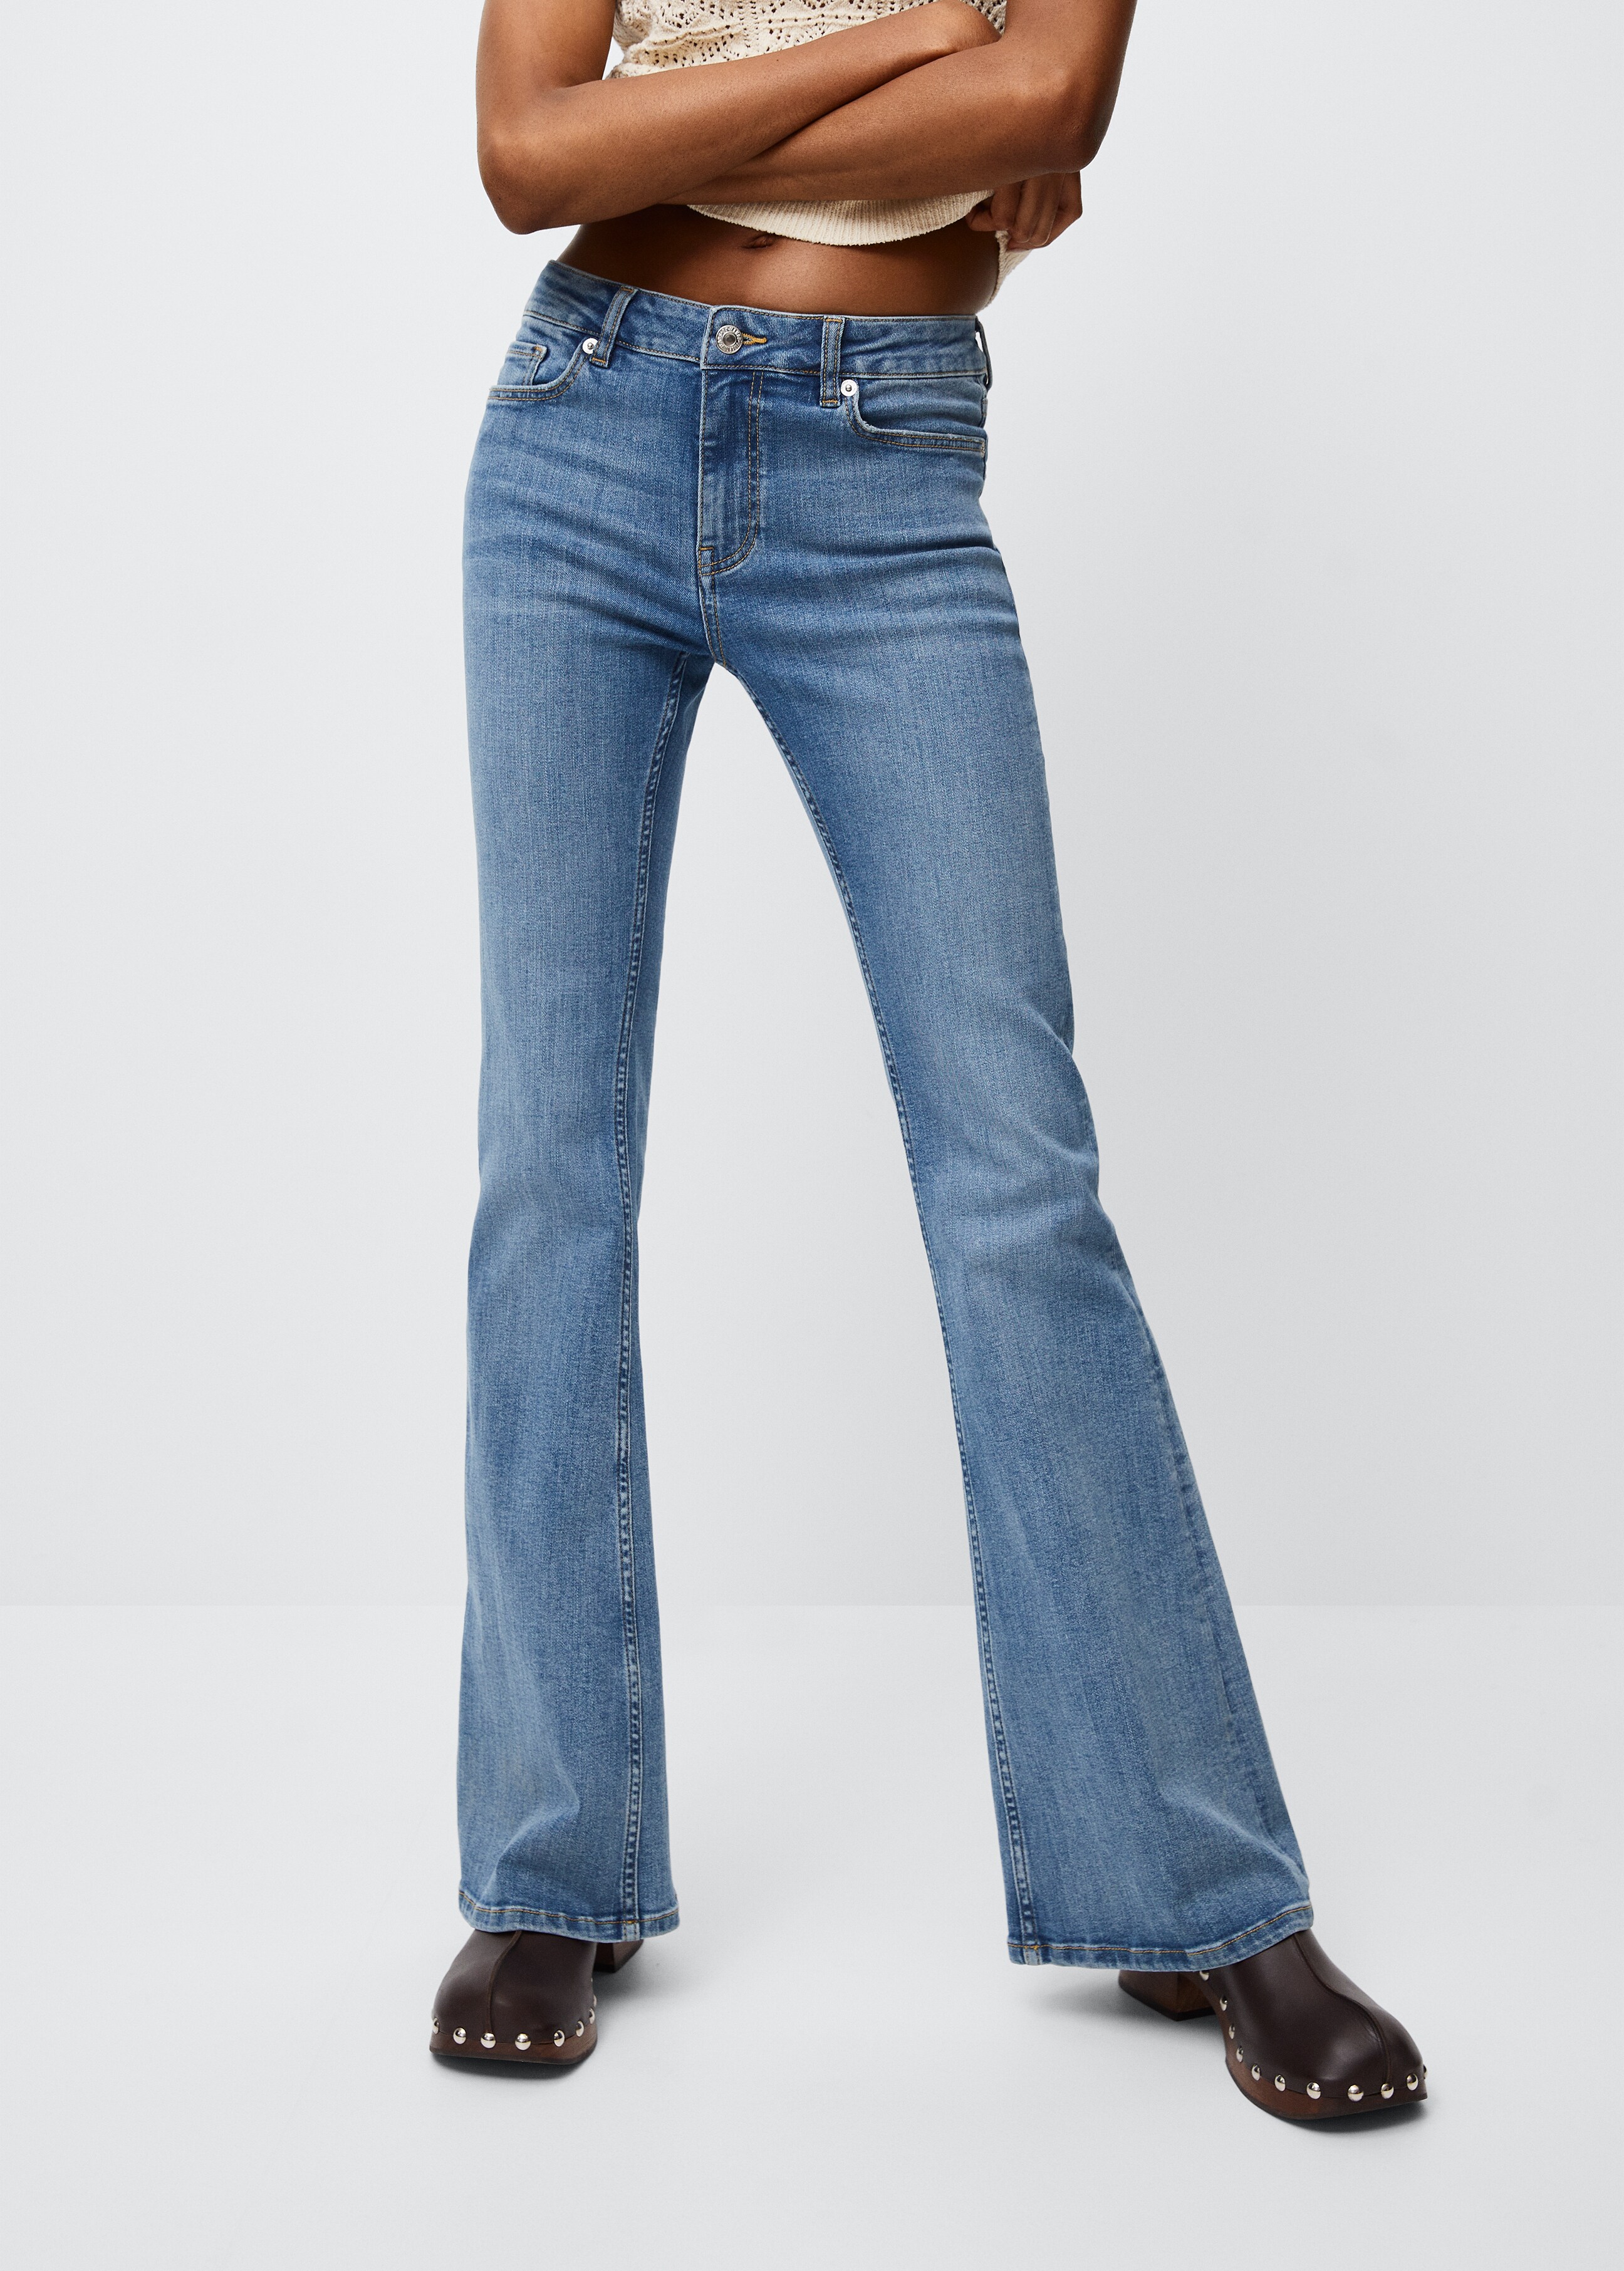 Jeans flare tiro medio - Plano medio